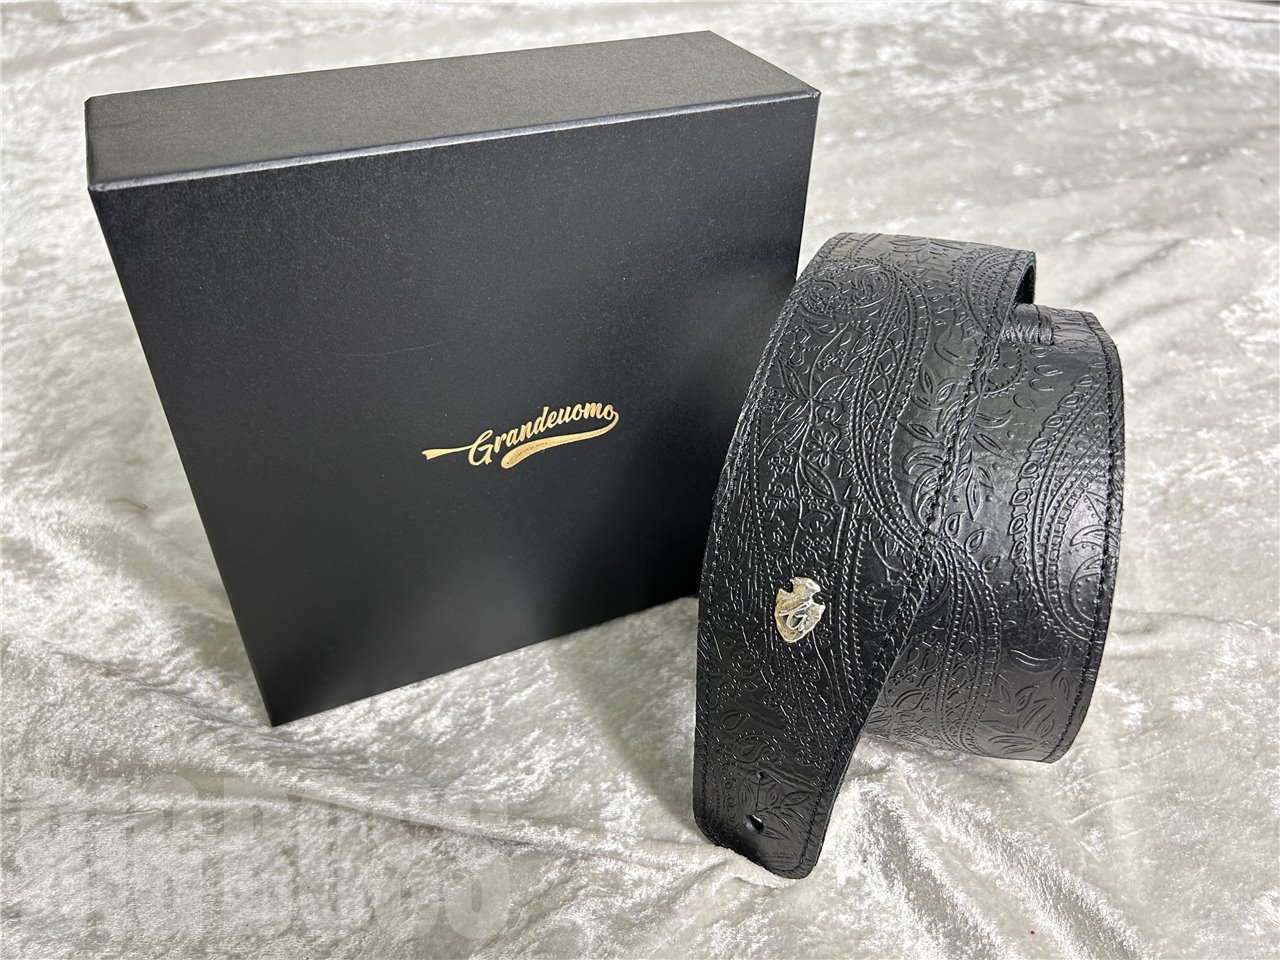 【即納可能】Grande uomo(グランデウオモ) Custom Shop G-Premium Paisley Black (ストラップ) お茶の水駅前店(東京)